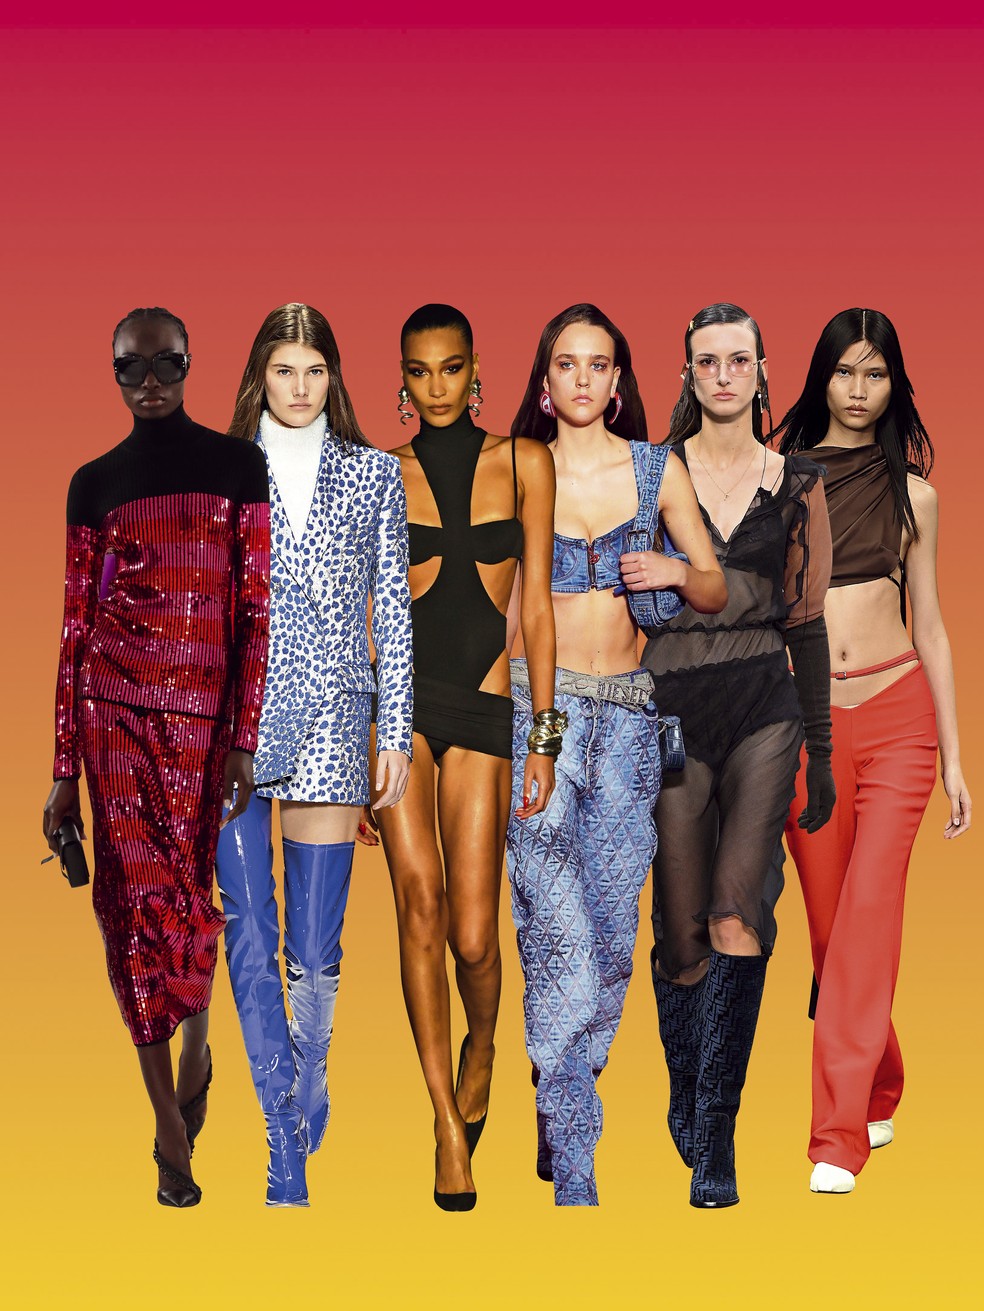 A moda inverno 2023 vem com diversos estilos e brilhos